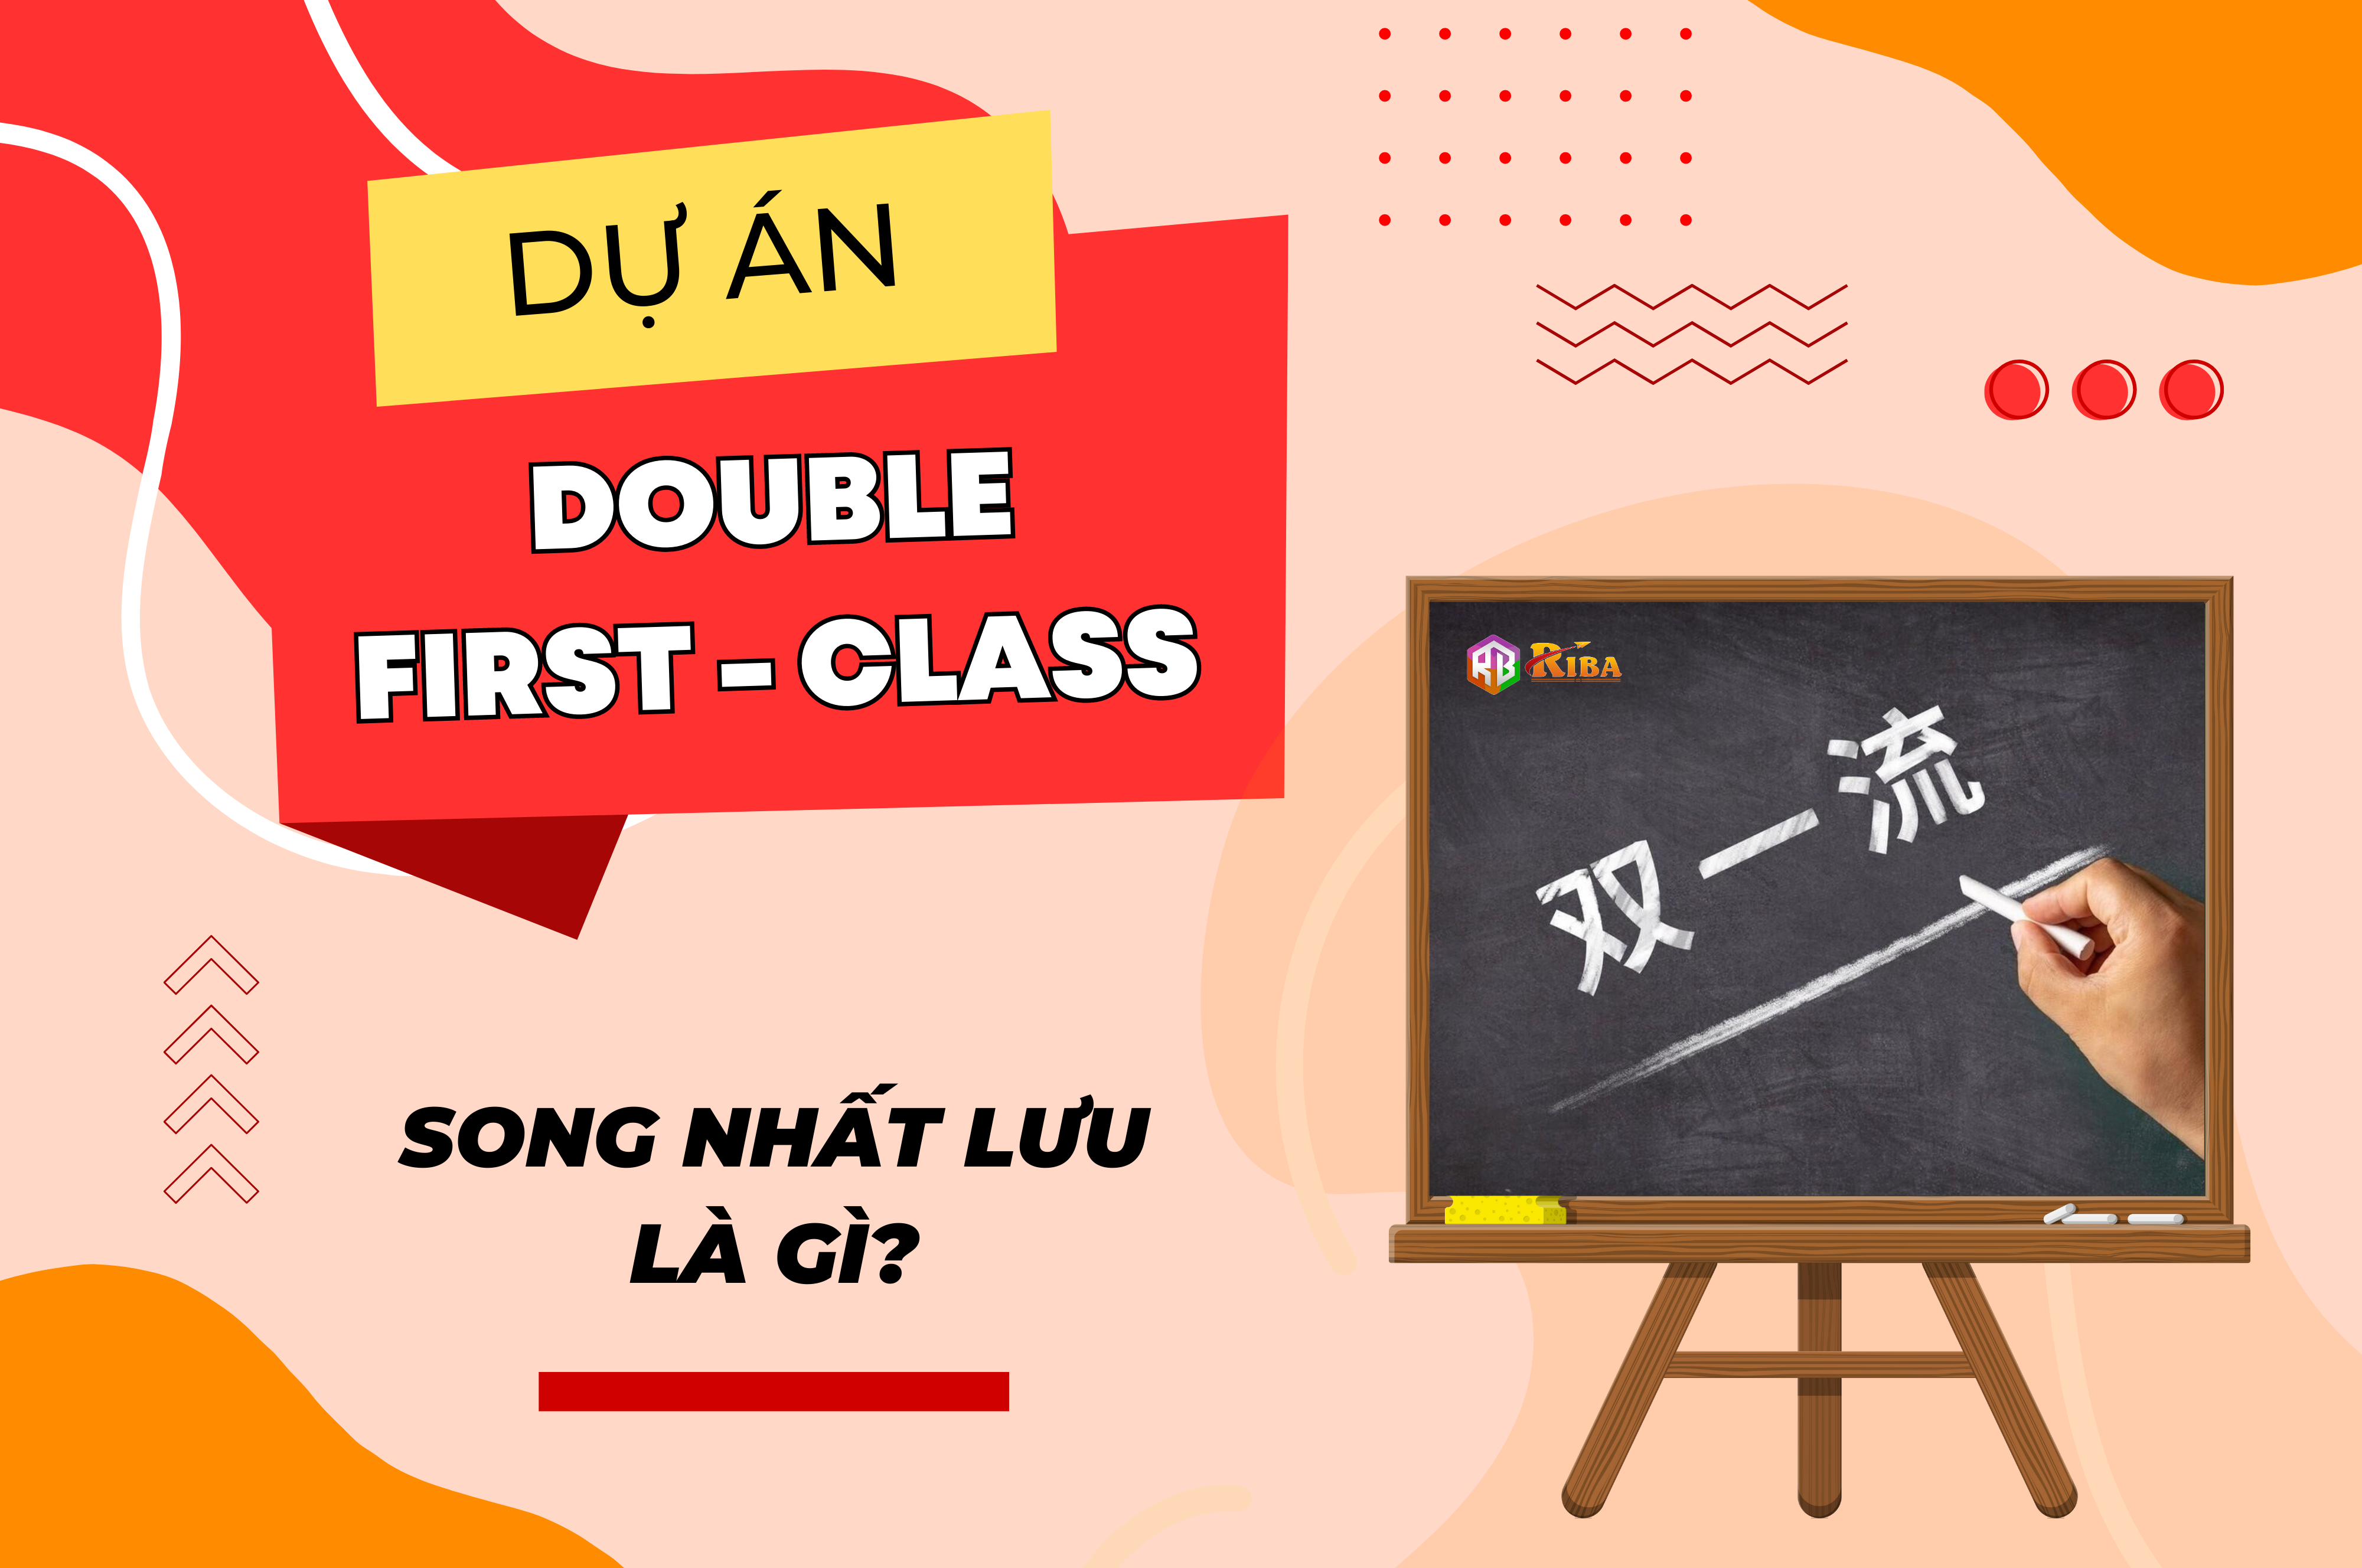 Dự án Double First-Class – Song nhất Lưu là gì?